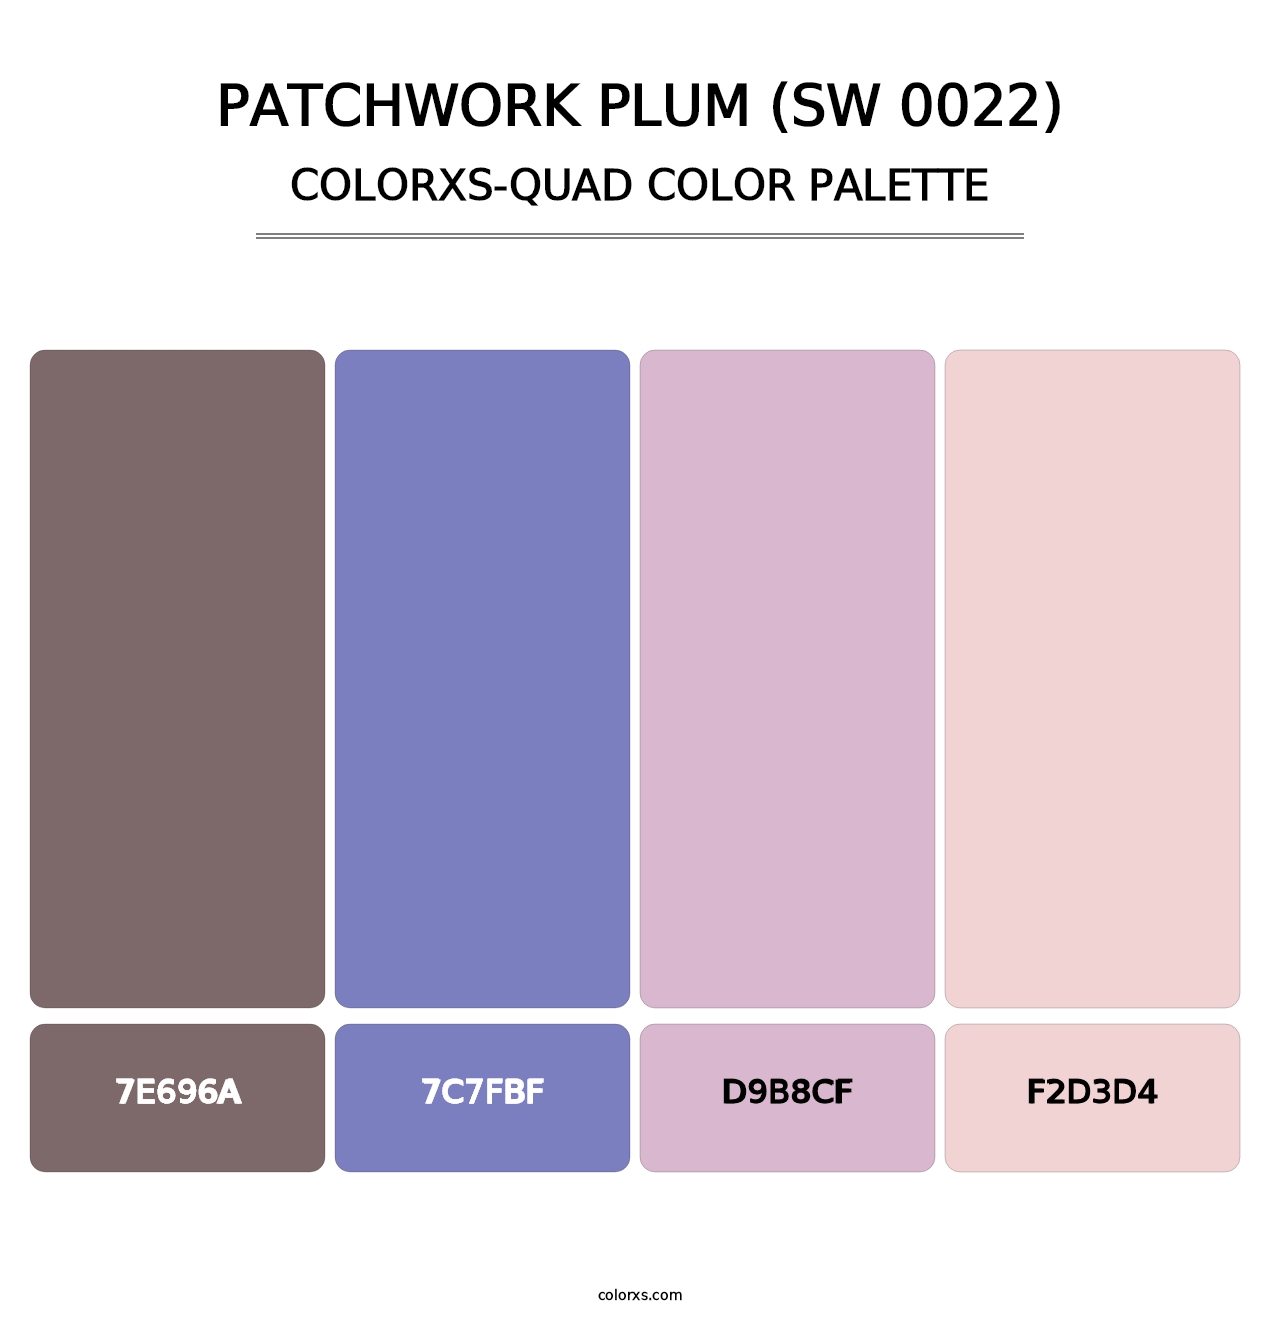 Patchwork Plum (SW 0022) - Colorxs Quad Palette